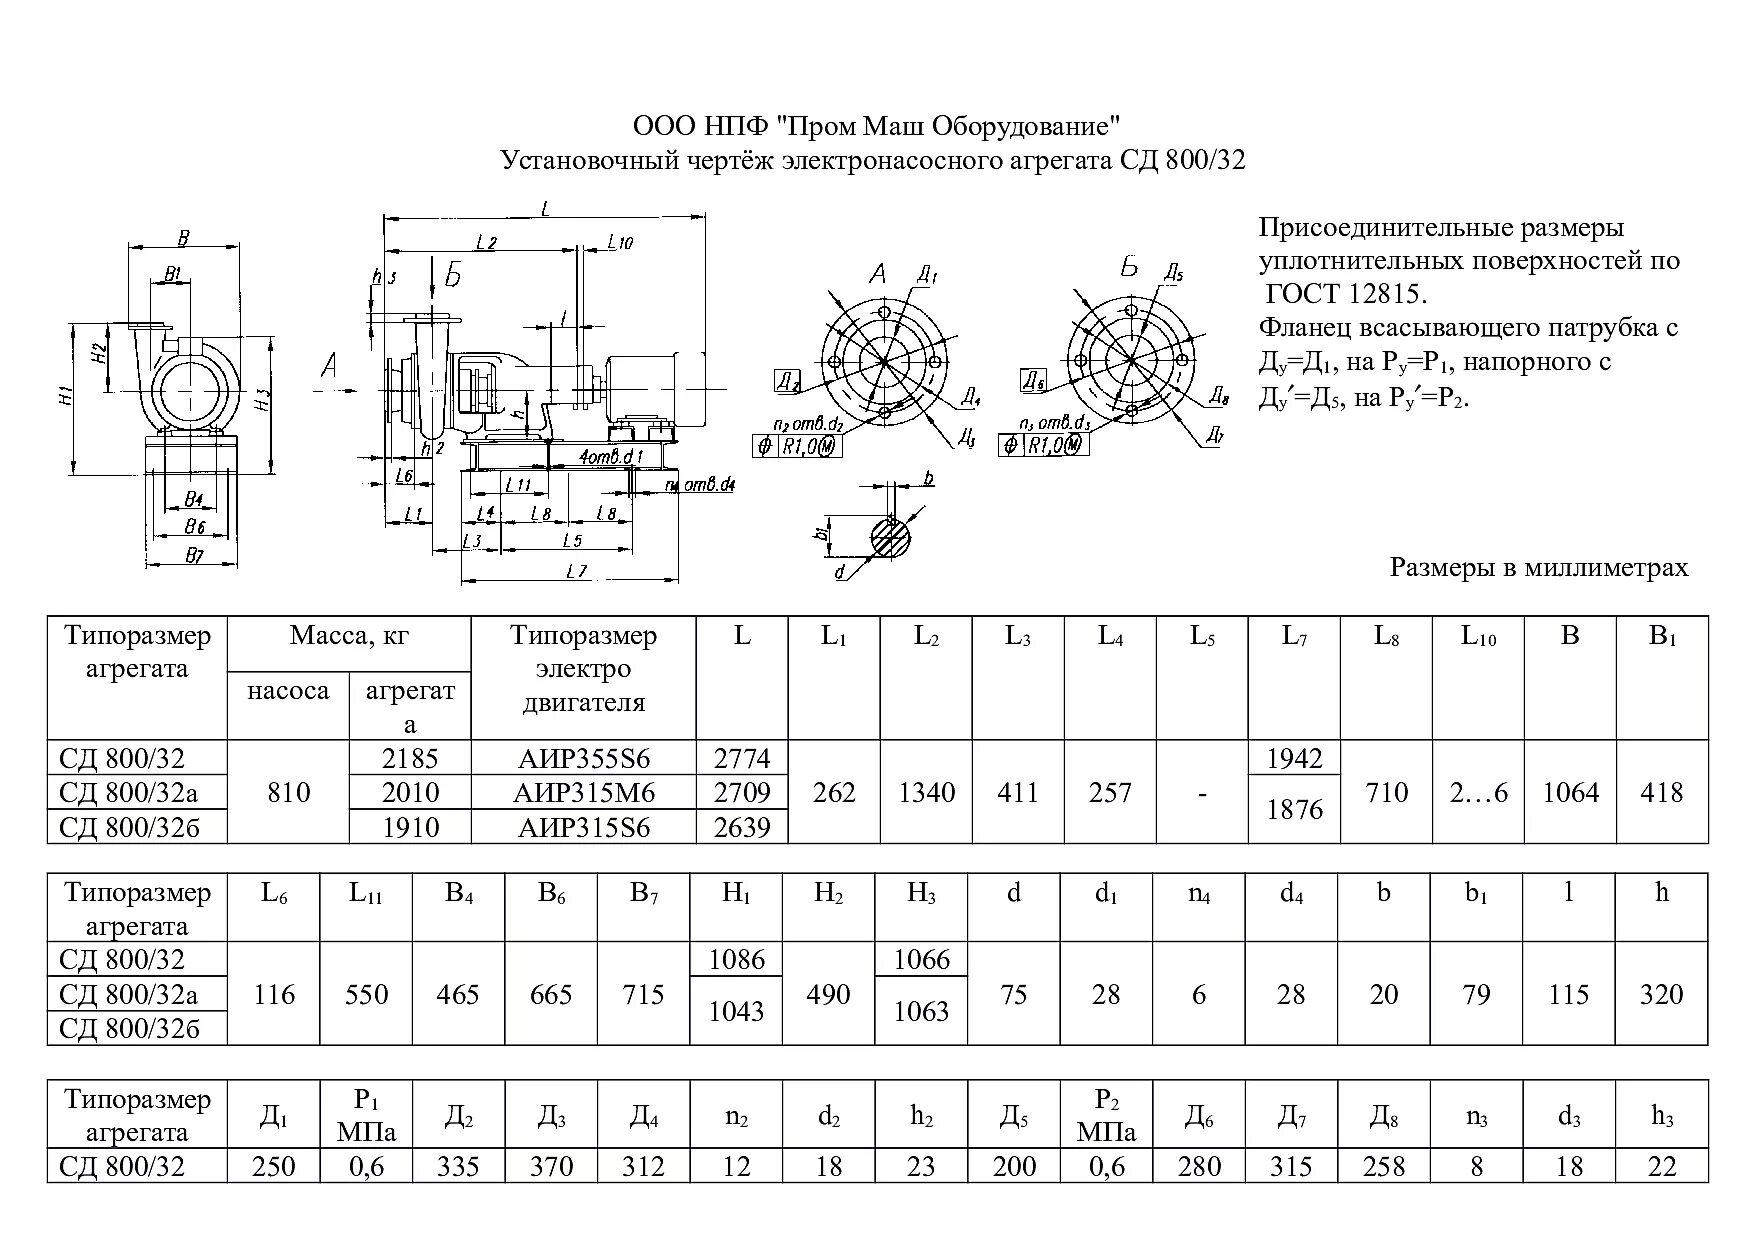 Технические сд. Насос 1сд 2400/75 габаритный чертеж. Технические характеристики насосного агрегата СД 800-32а. Габаритный чертеж насоса СД 800/32. Насос СД 250 22.5 технические характеристики.